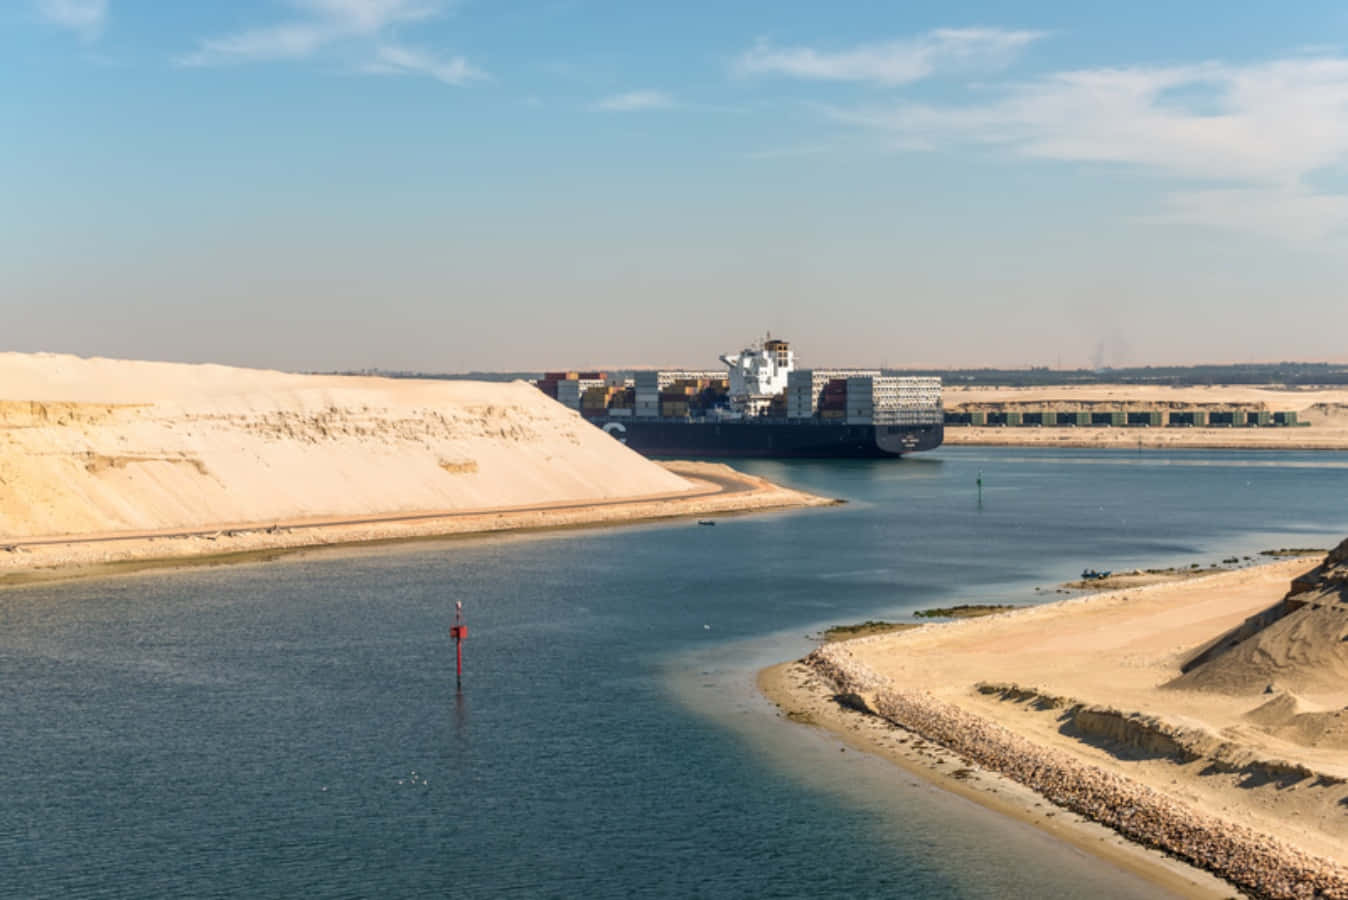 Suezkanal enormt skib billede tapet